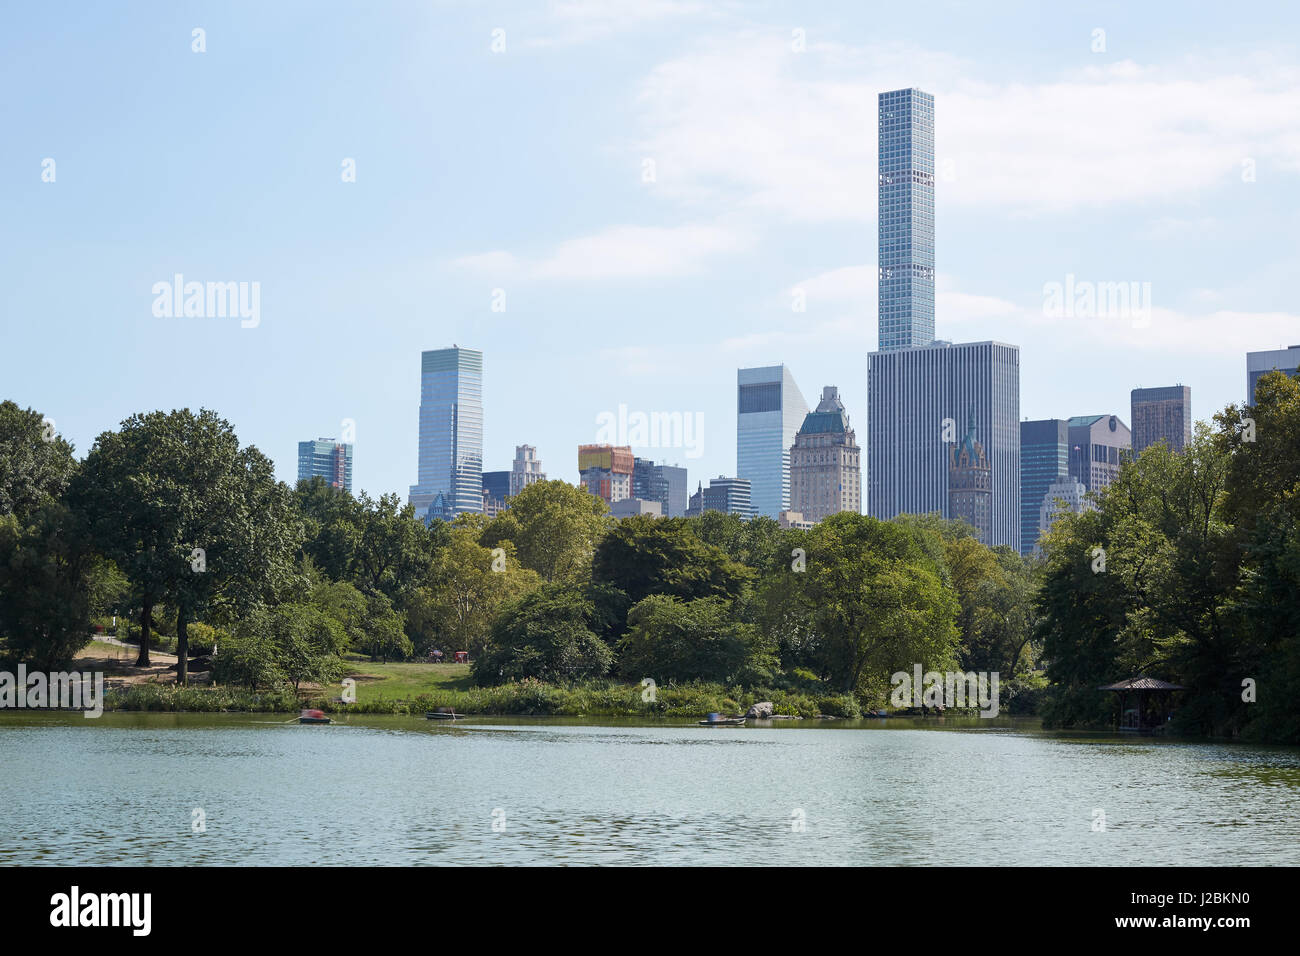 Skyline von New York mit 432 Park Avenue Wolkenkratzer vom Central Park mit Teich Stockfoto